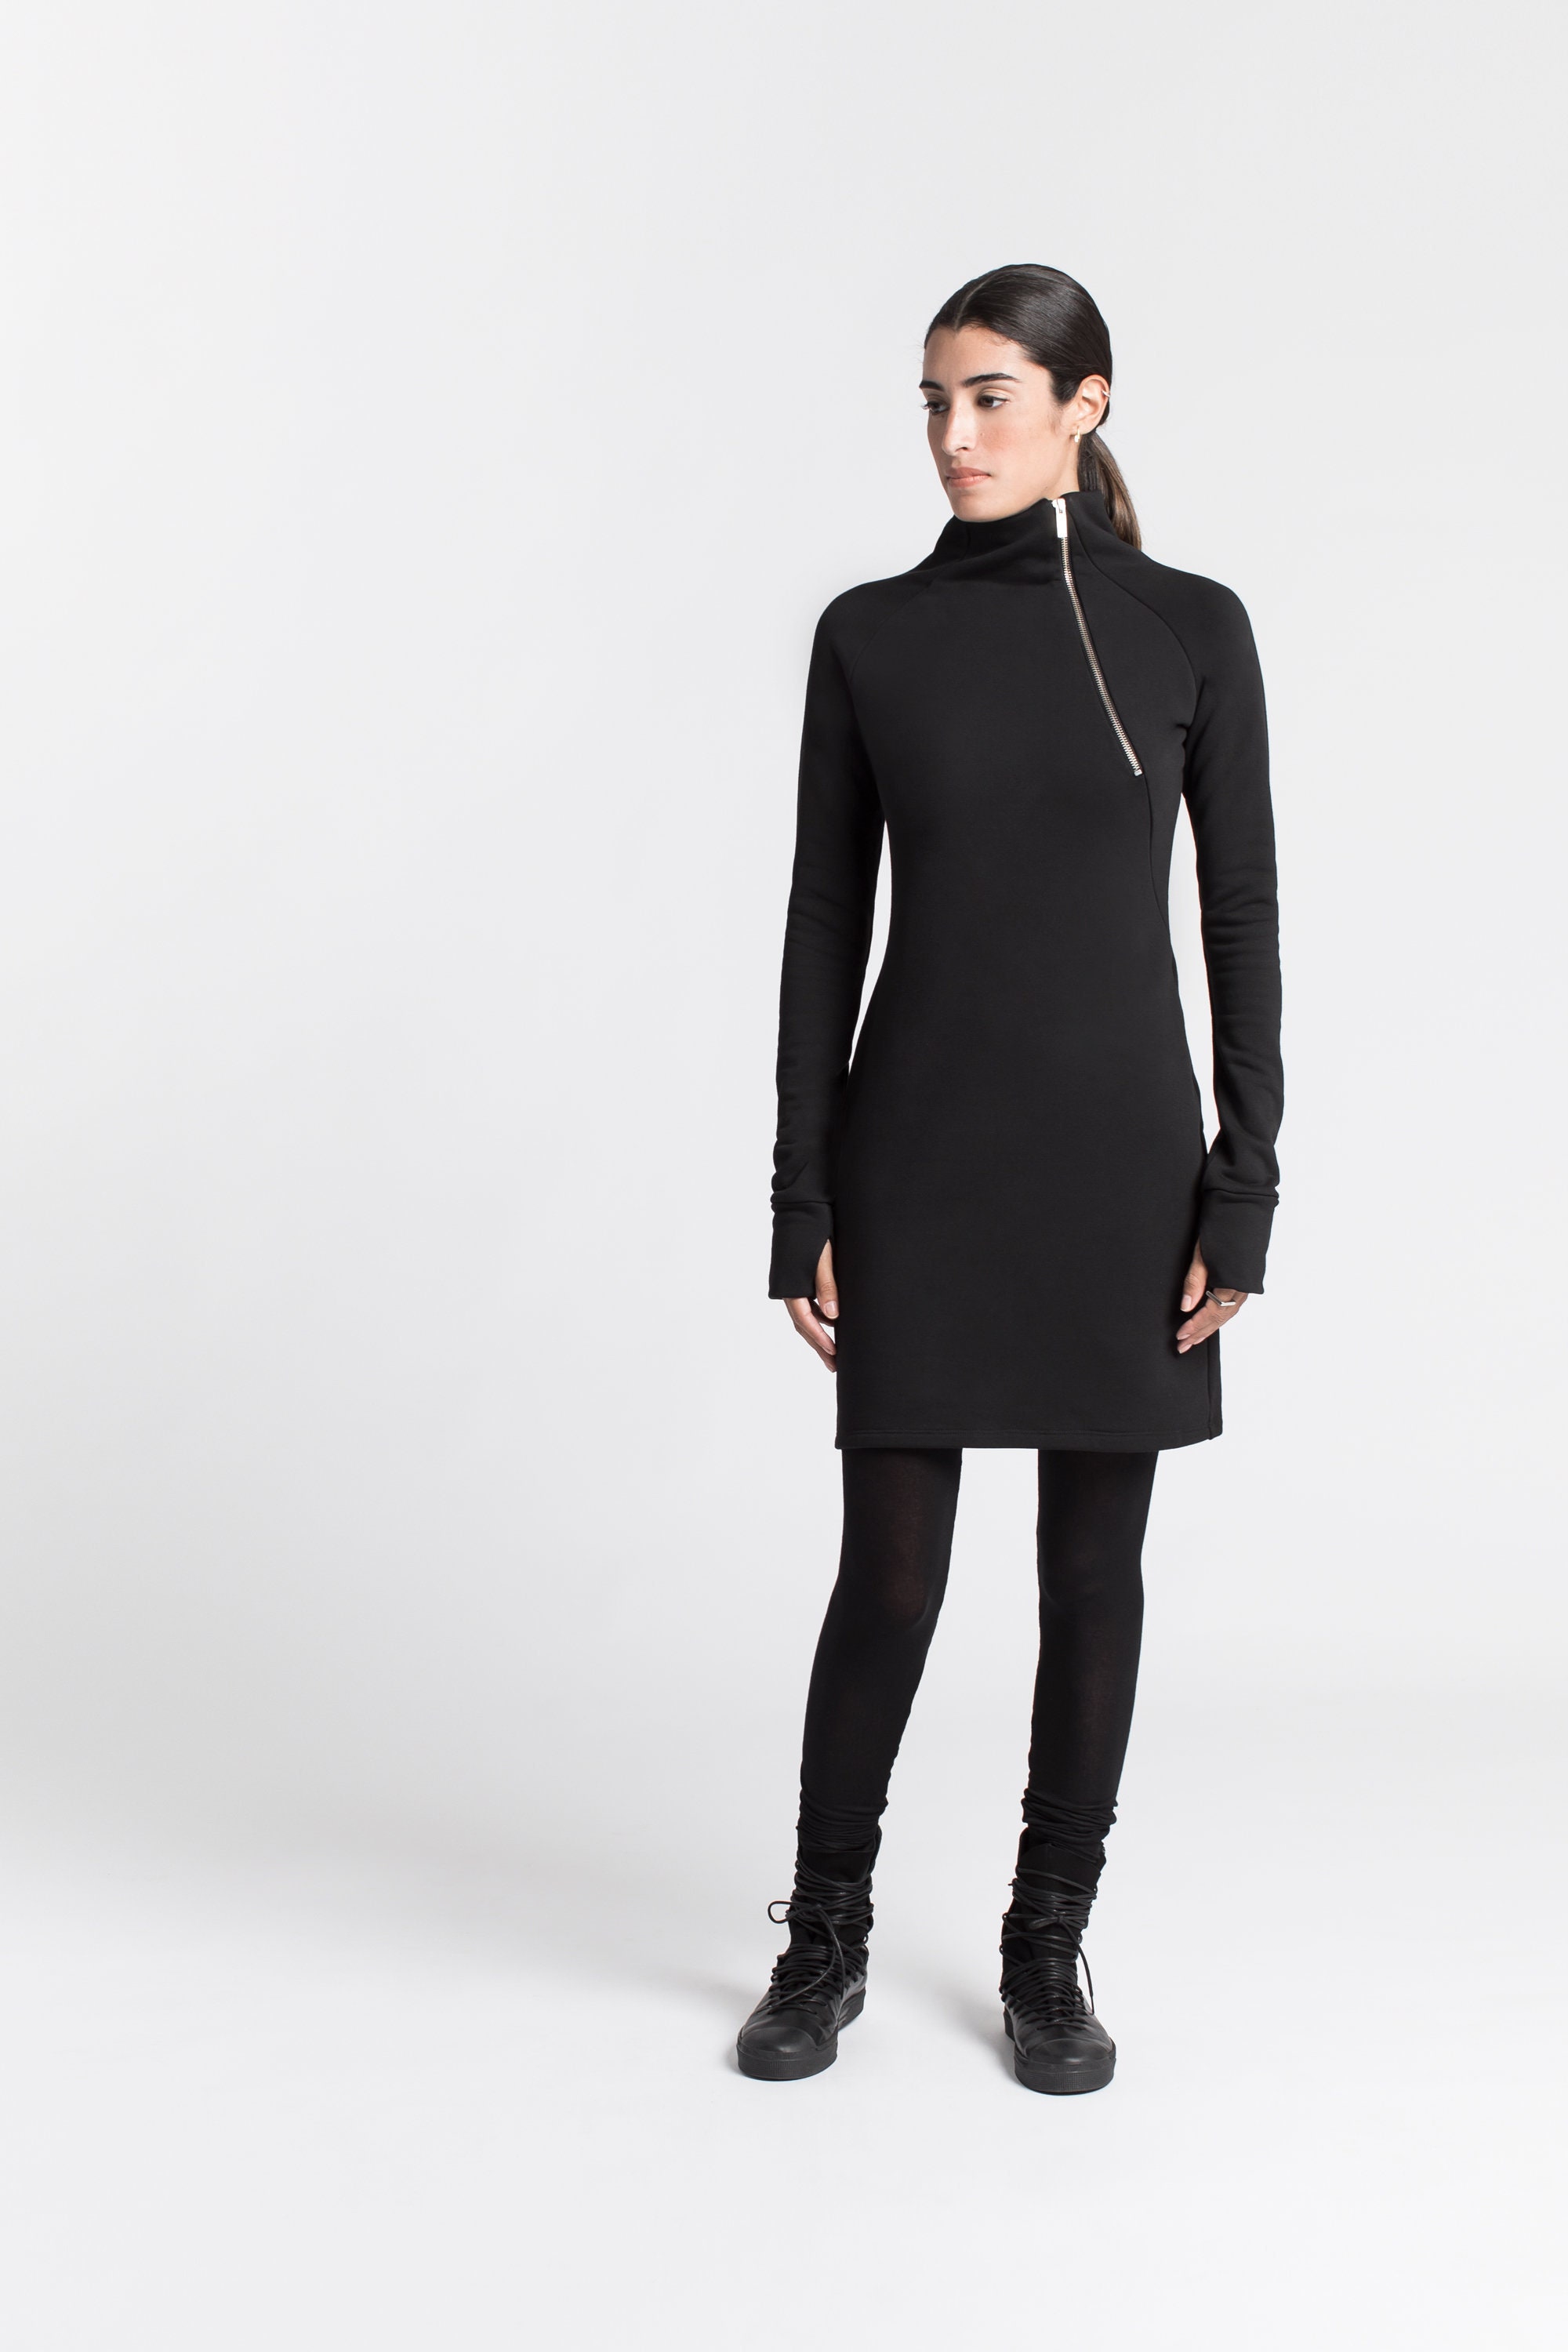 Dress, - Marcella Turtleneck Sweatshirt Dress, Sweatshirt Dress, Black Dress, Winter Alani Sleeve Long MD1161 Dress, Norway Dress, Etsy